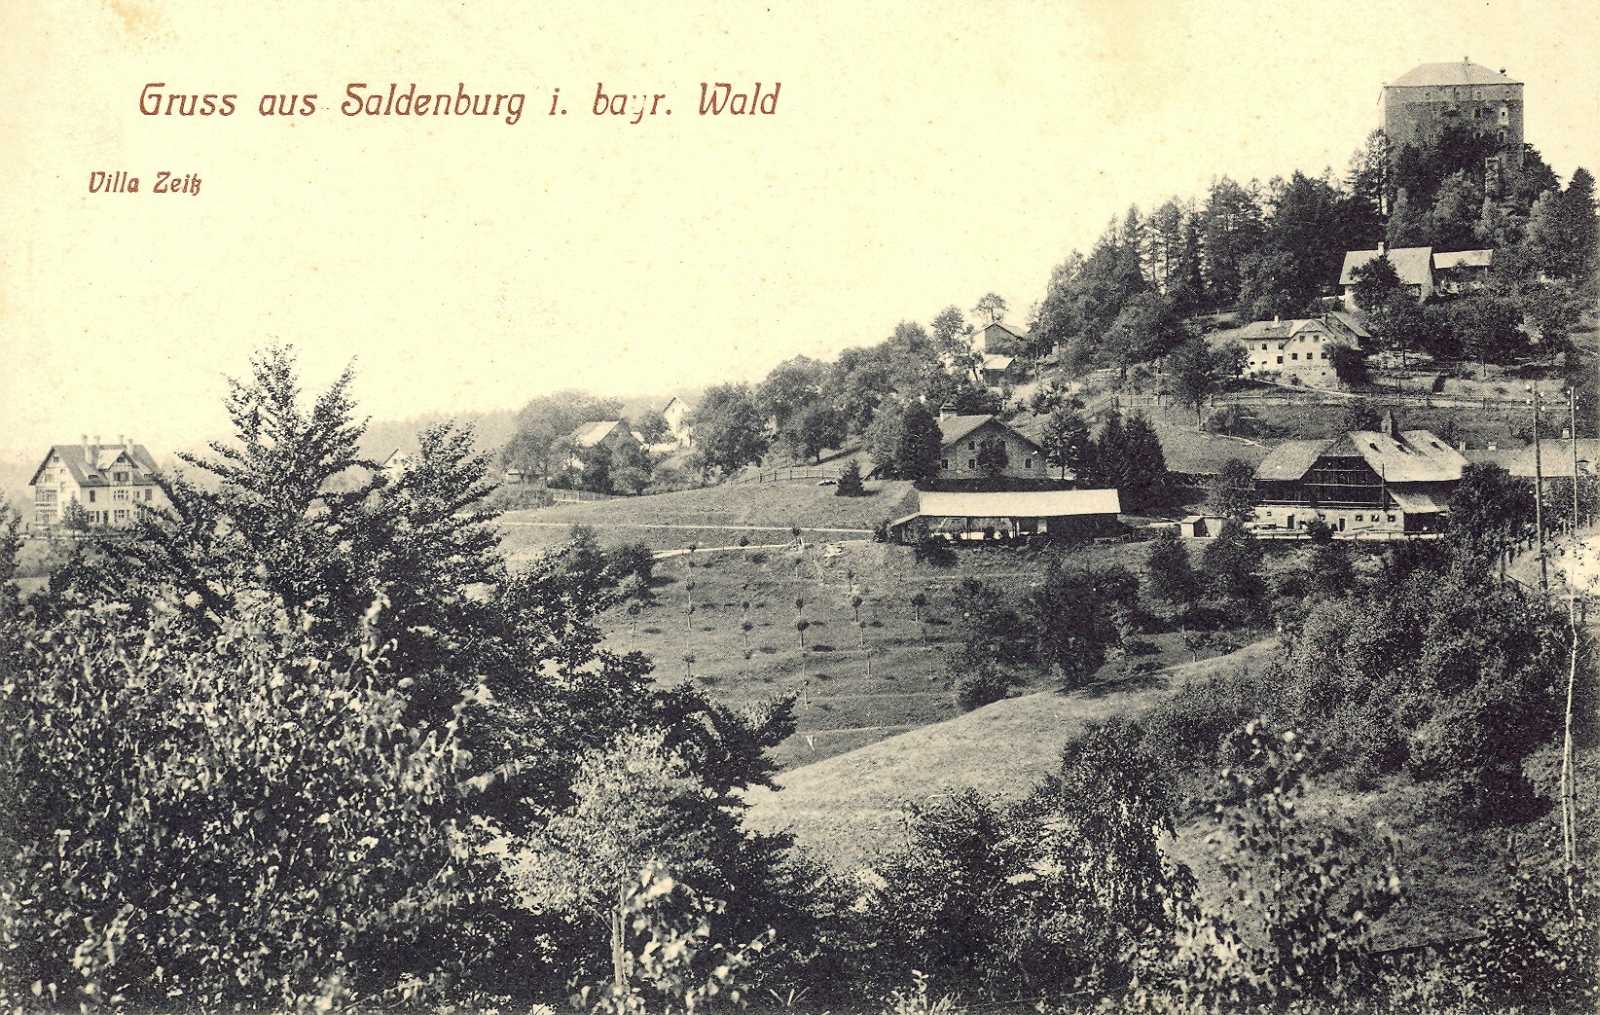 Blick auf die Saldenburg.